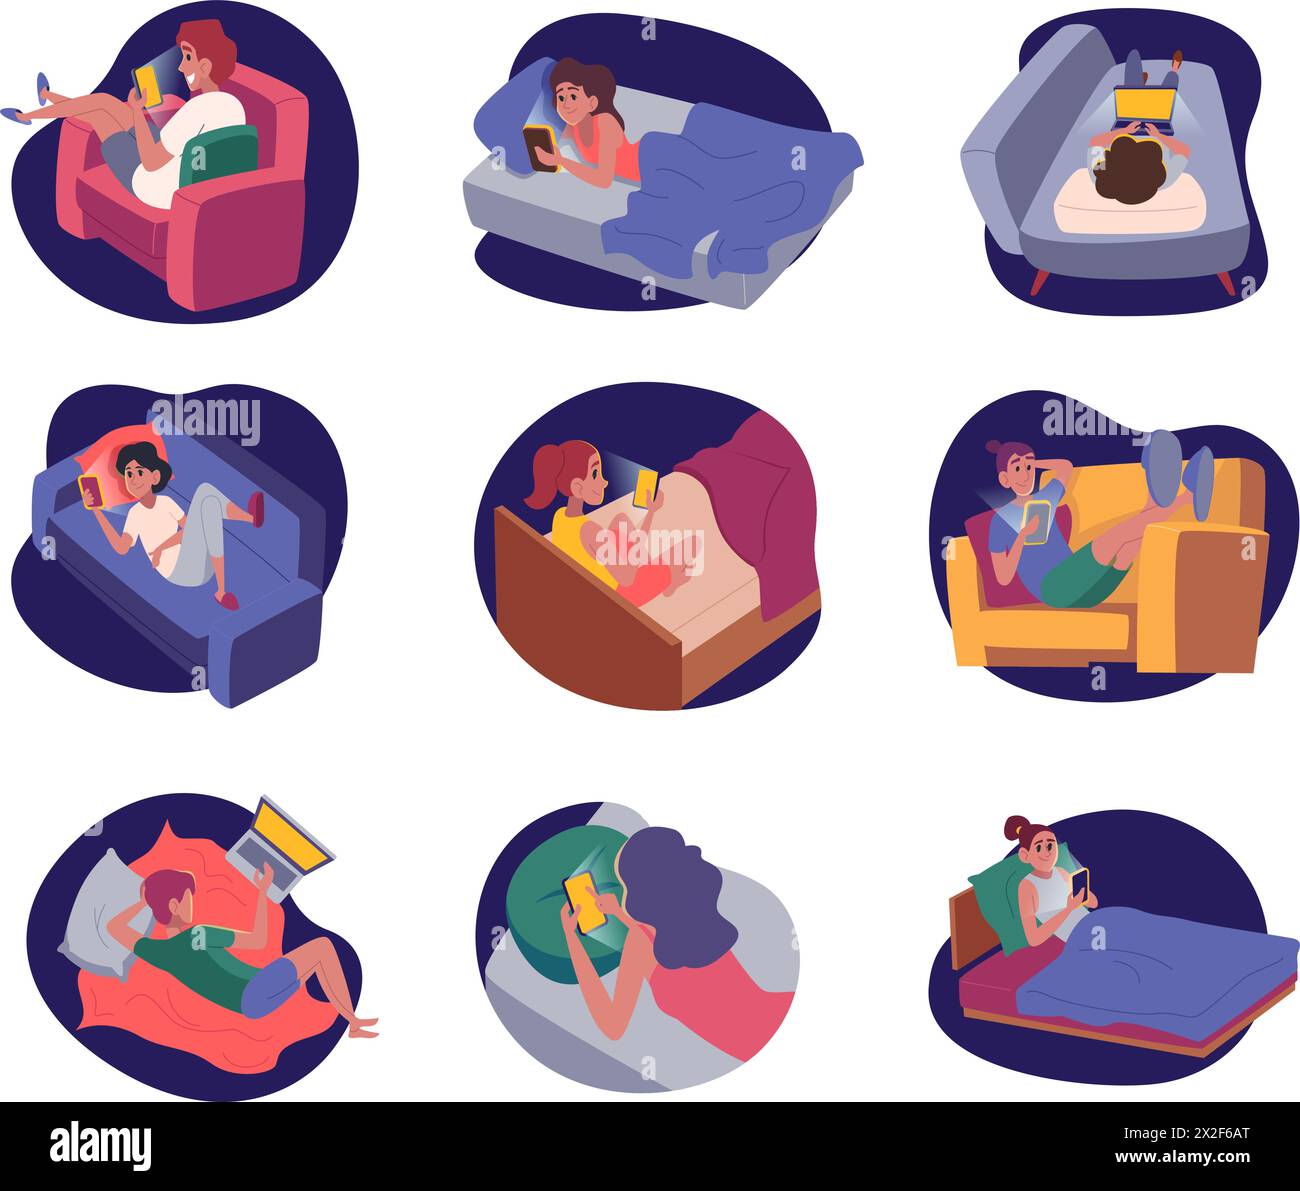 Nächtliches Telefon. Menschen, die Handys im Bett vor dem Schlaf benutzen exakte Vektor-Illustrationen im Cartoon-Stil gesetzt Stock Vektor